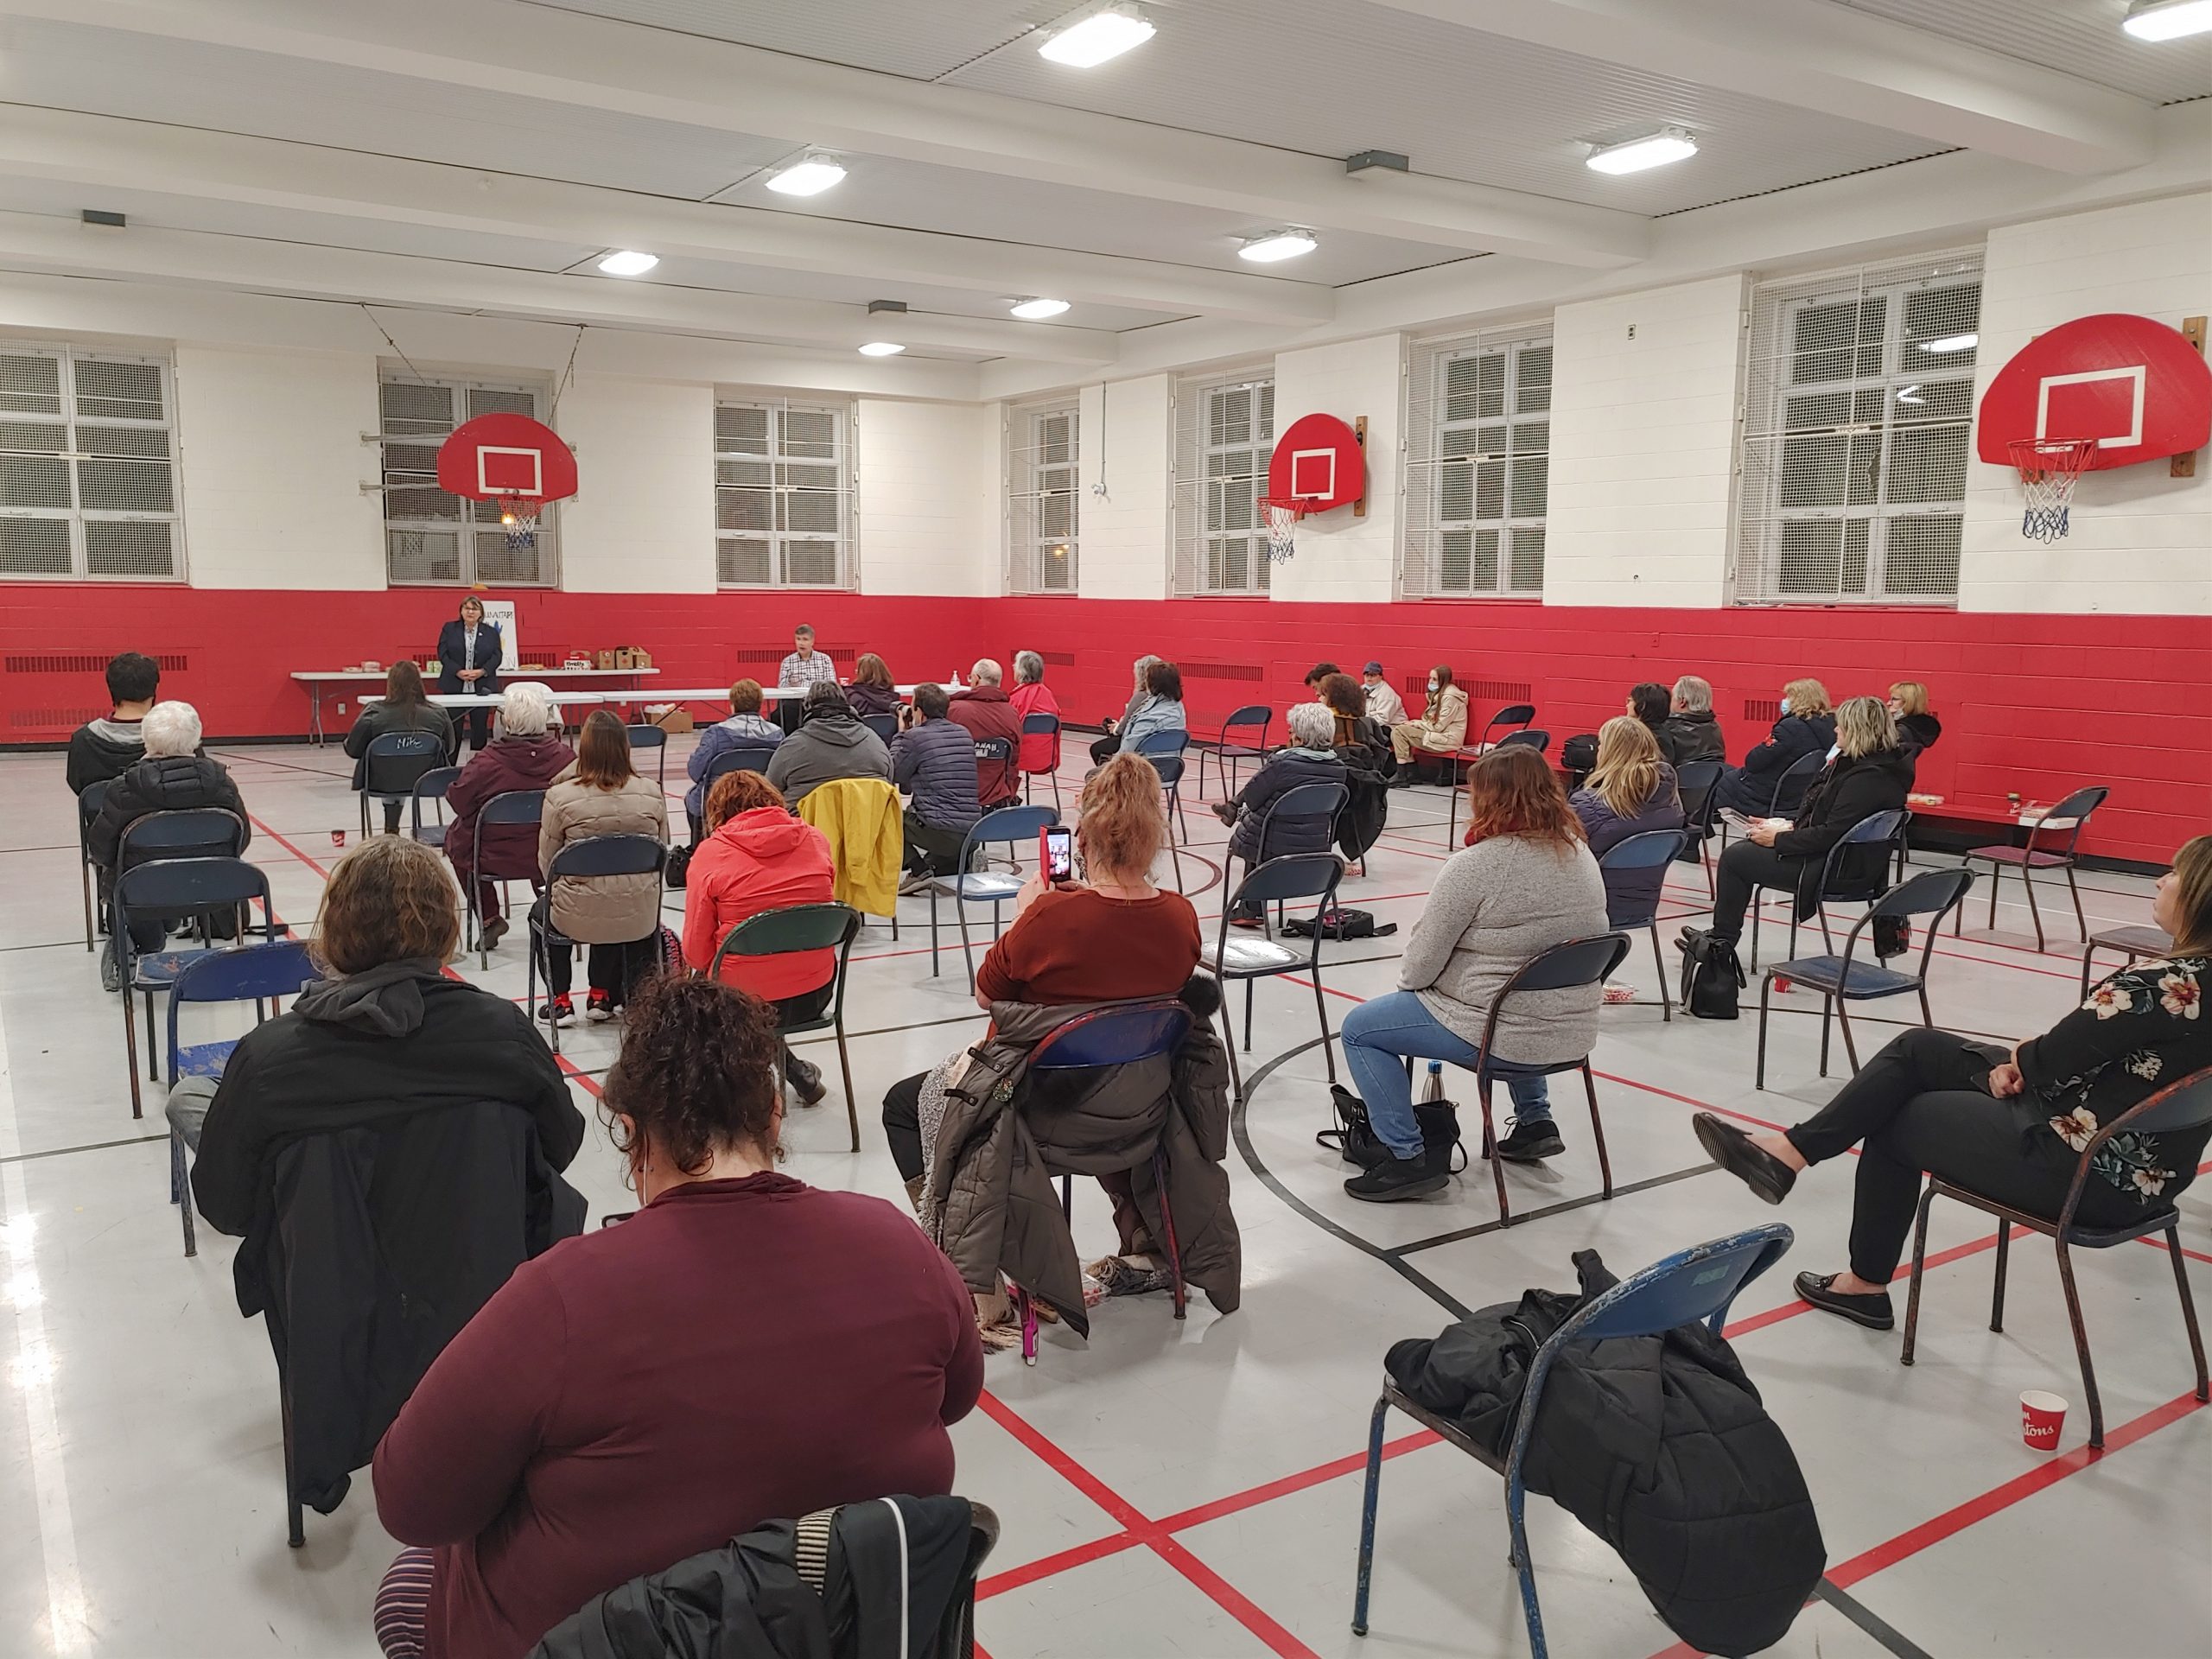 Soirée électorale municipale communautaire en mode élection 2021. Groupe de personnes assis sur des chaises dans un gymnase regardant candidat·e